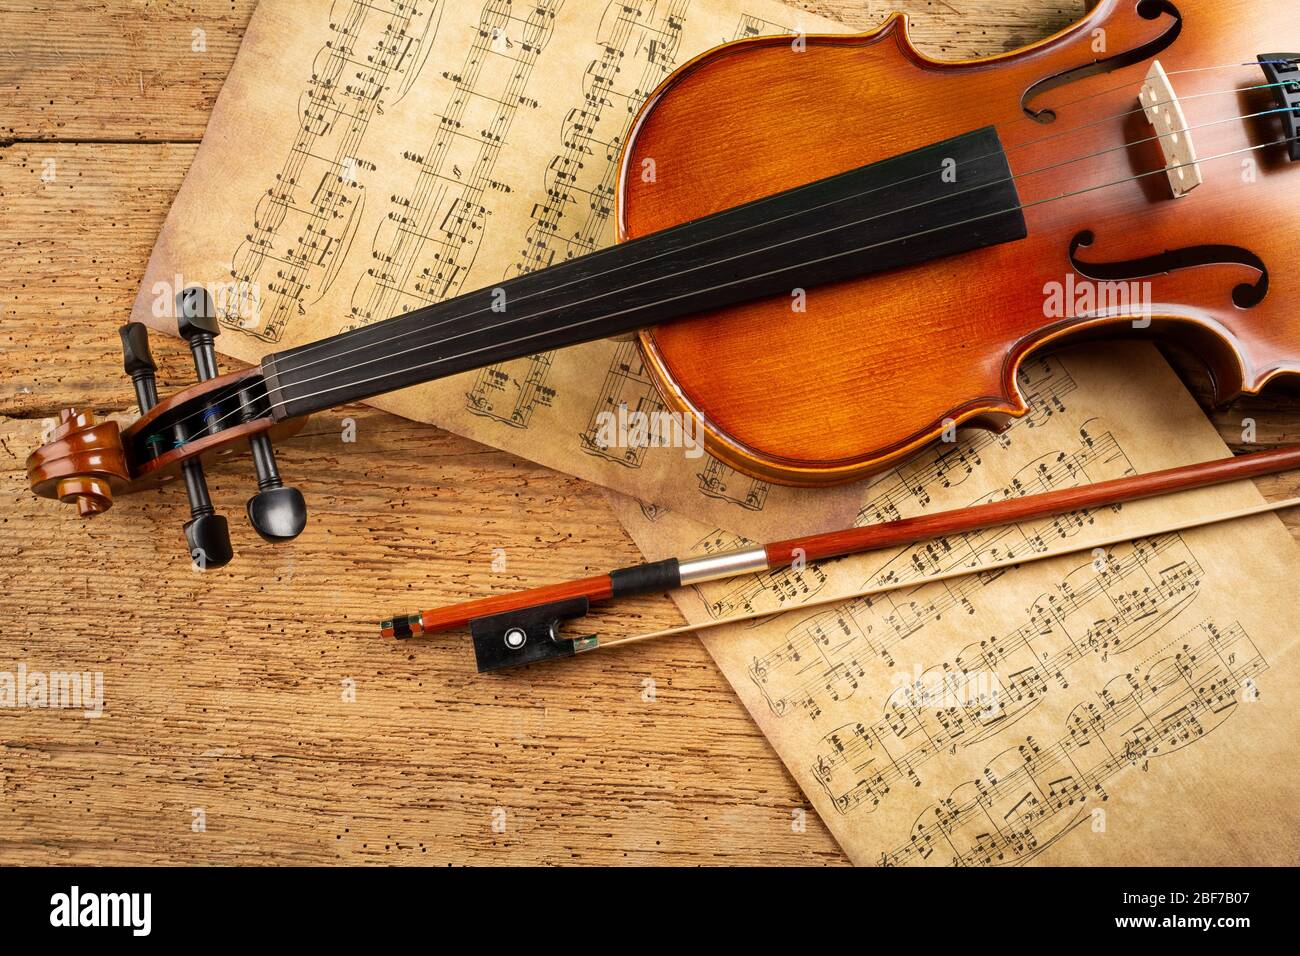 musique classique rétro de violon chaîne instrutt avec de la musique ancienne note papier sur fond de bois de chêne ancien. musique classique romantique valentines da Banque D'Images